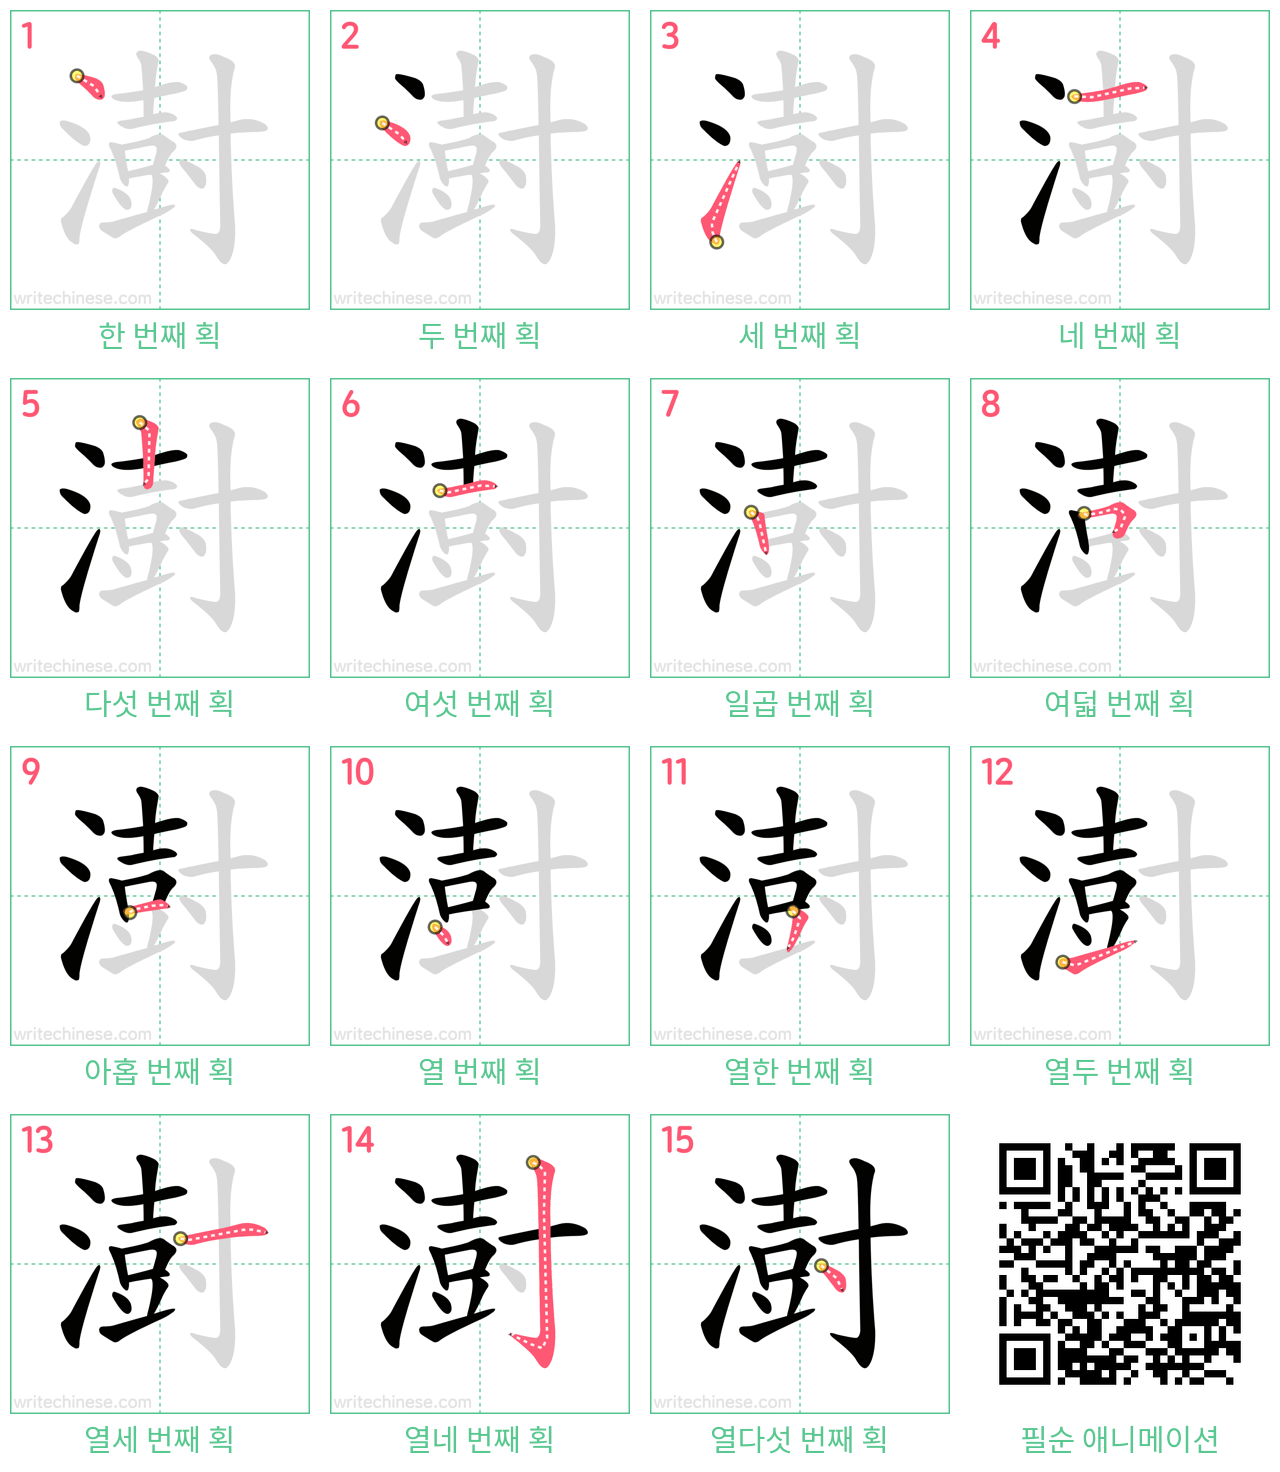 澍 step-by-step stroke order diagrams